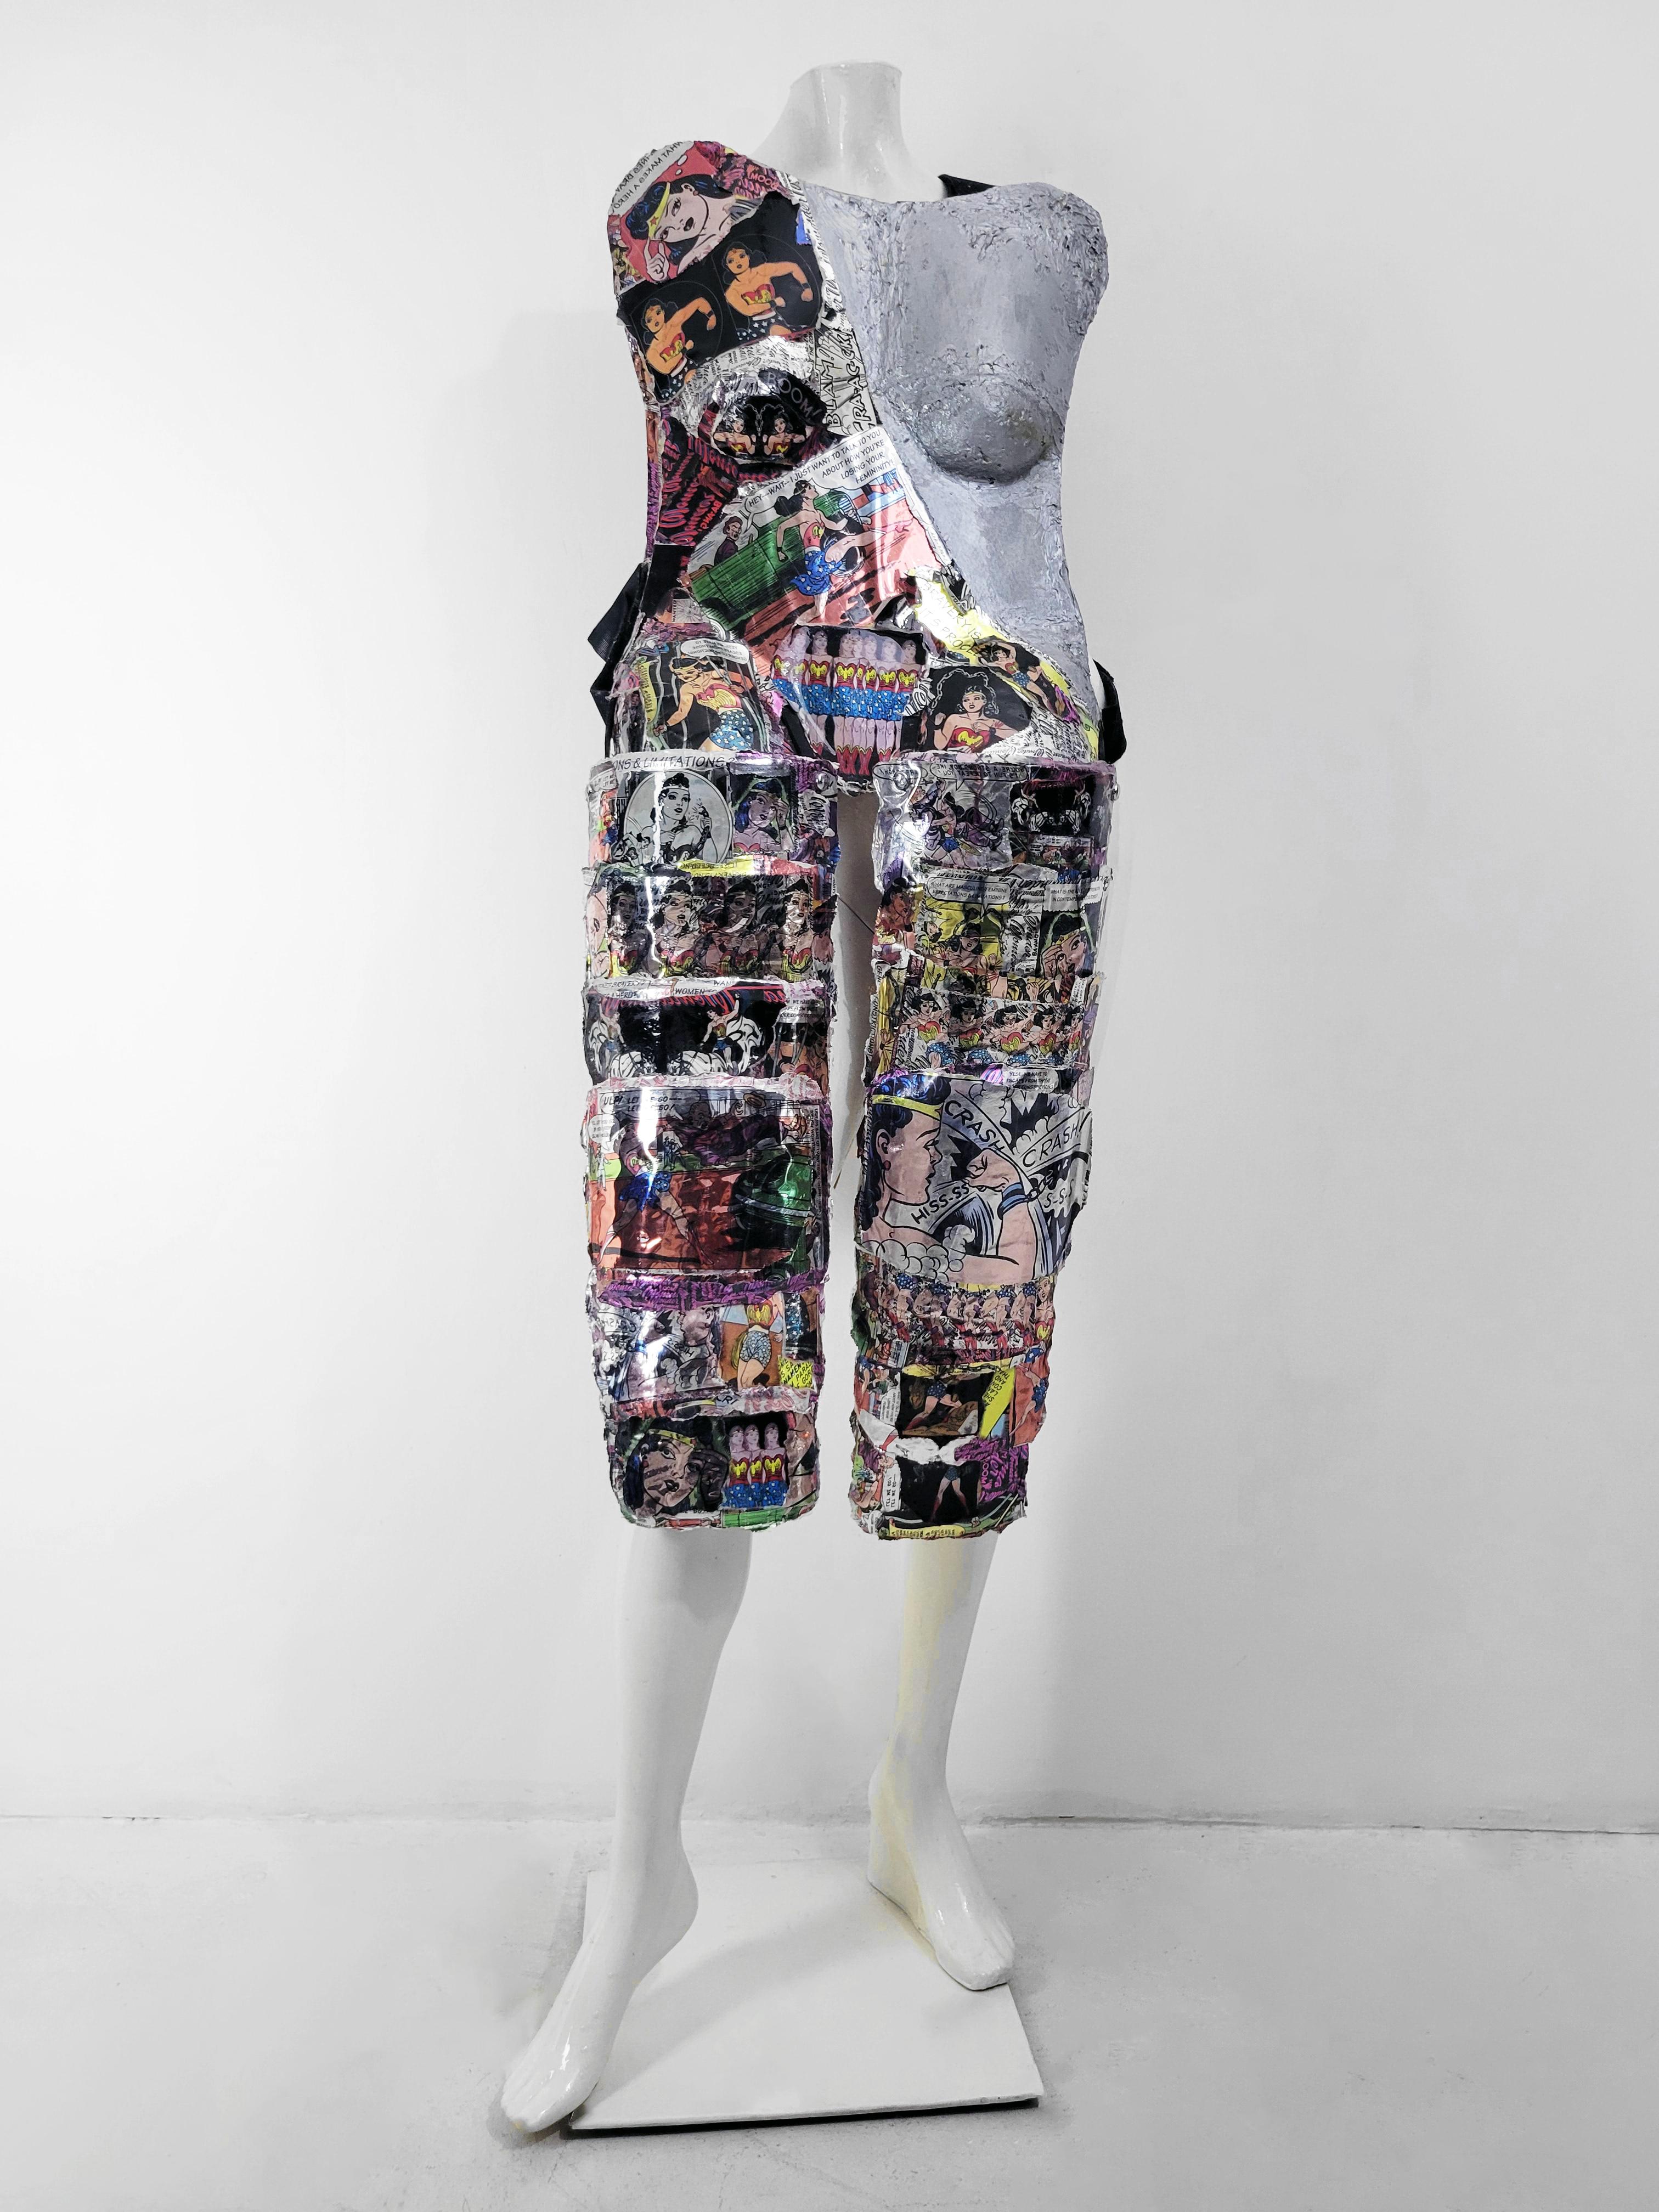 Arrow Knight 670 – zeitgenössische tragbare Performance-Skulptur aus Mischtechnik – Sculpture von Linda Stein